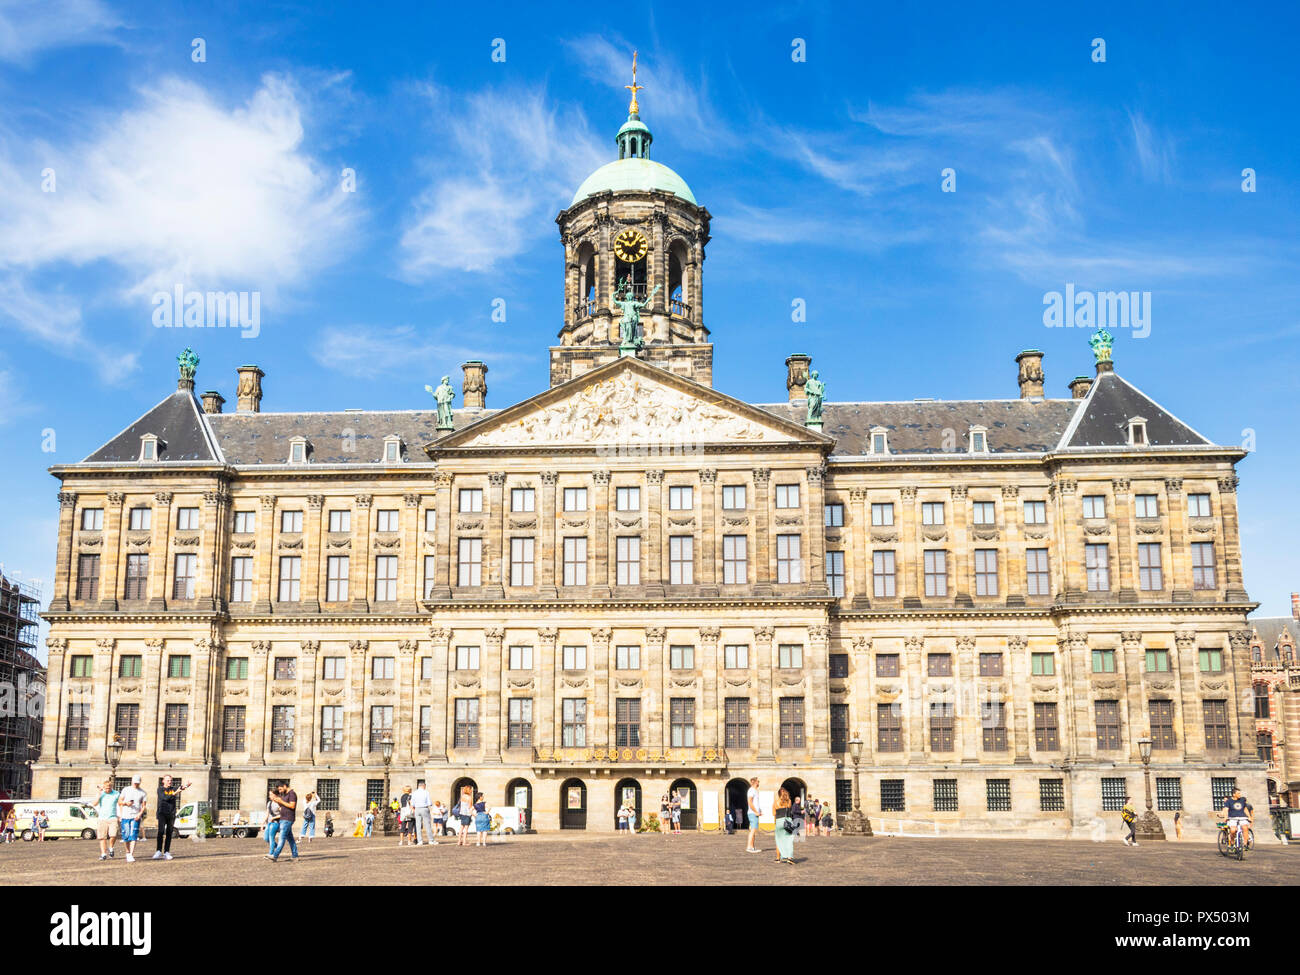 Palais Royal d'Amsterdam Koninklijk Paleis en place du Dam Amsterdam Amsterdam Pays-Bas Hollande centrale Europe de l'UE Banque D'Images